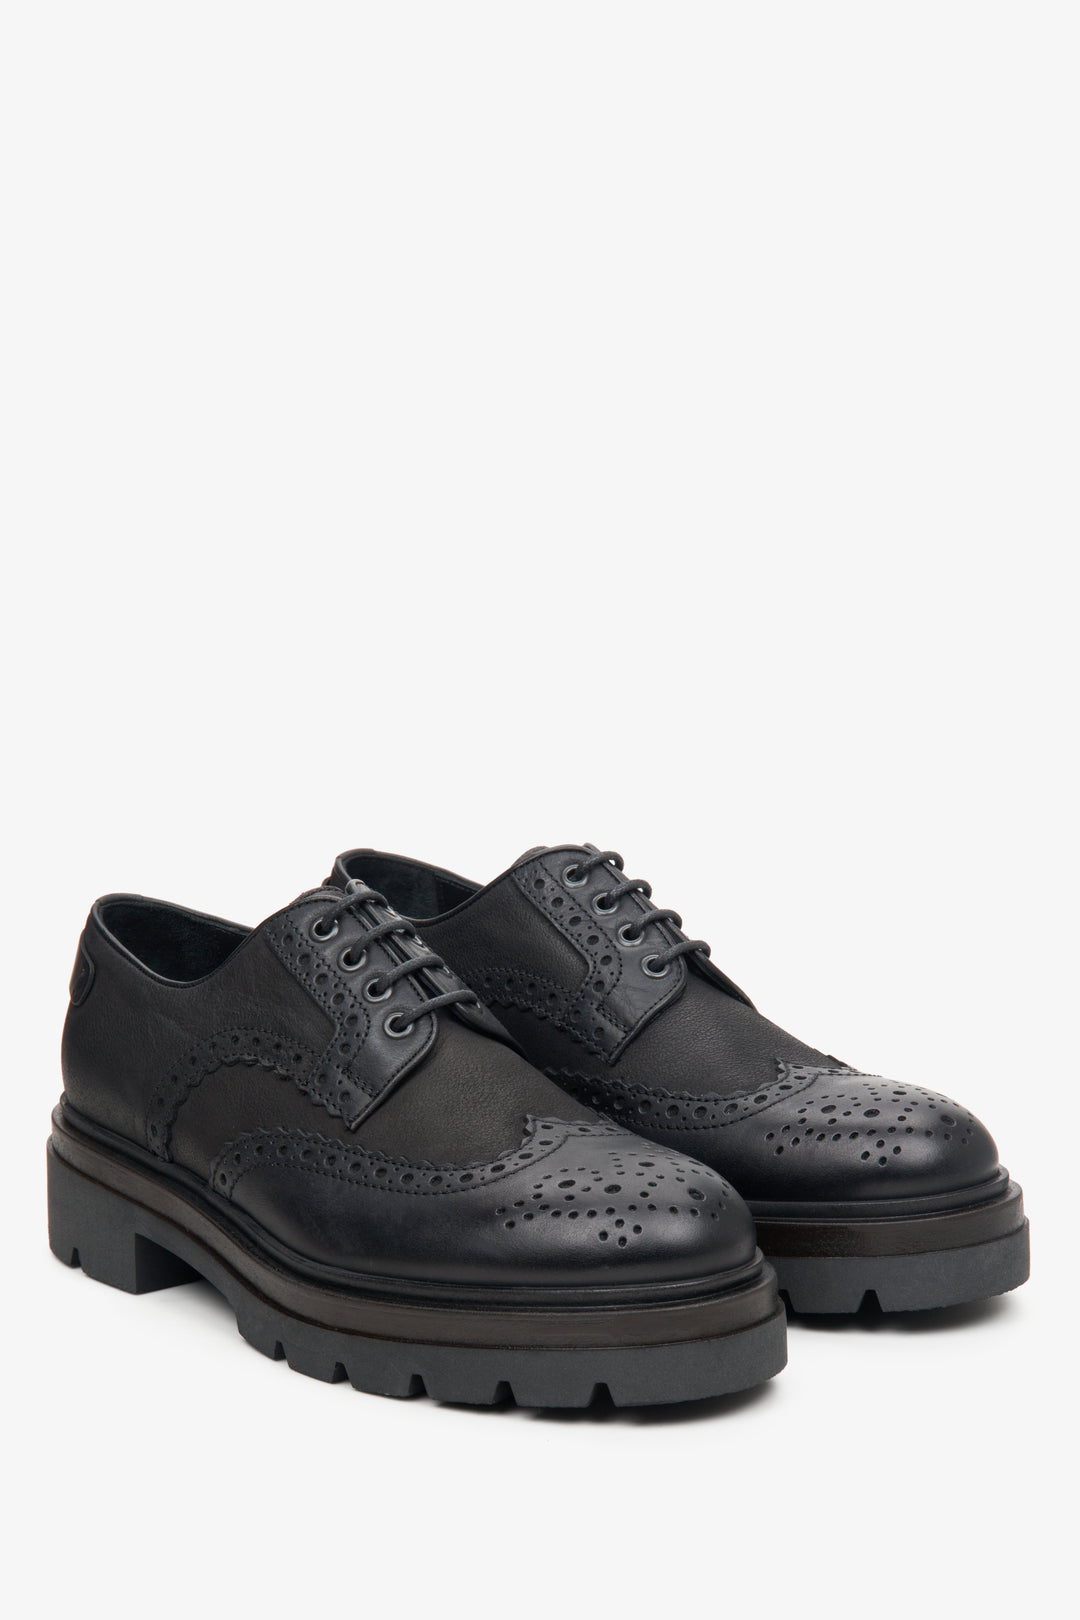 Men's black lace-up shoes by Estro.Brown lace-up men's shoes by Estro.